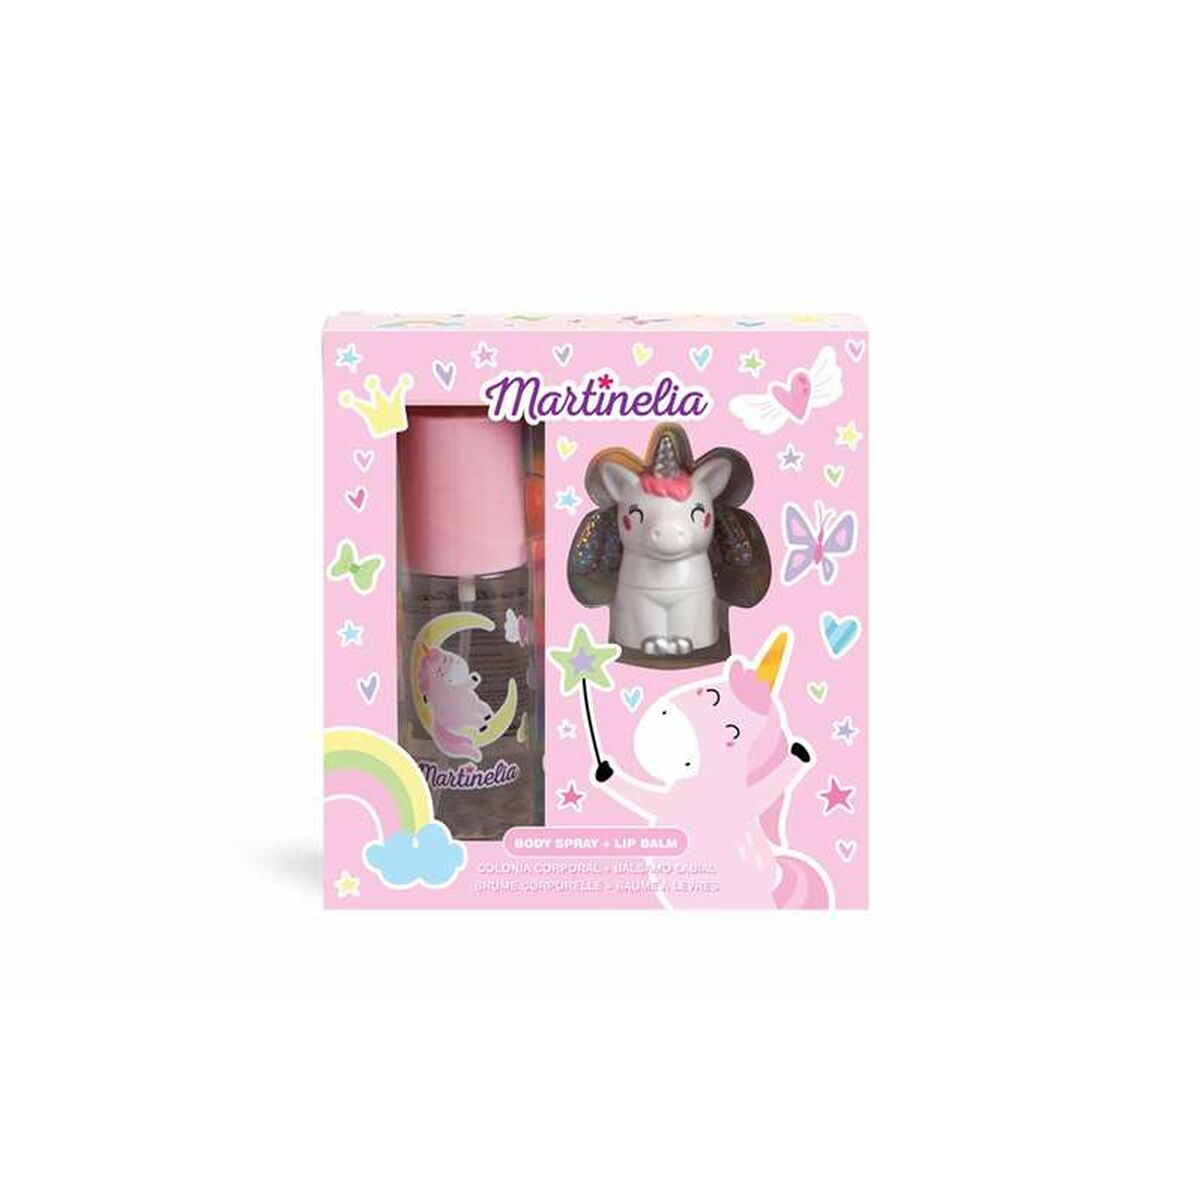 Kit de maquillage pour enfant Martinelia